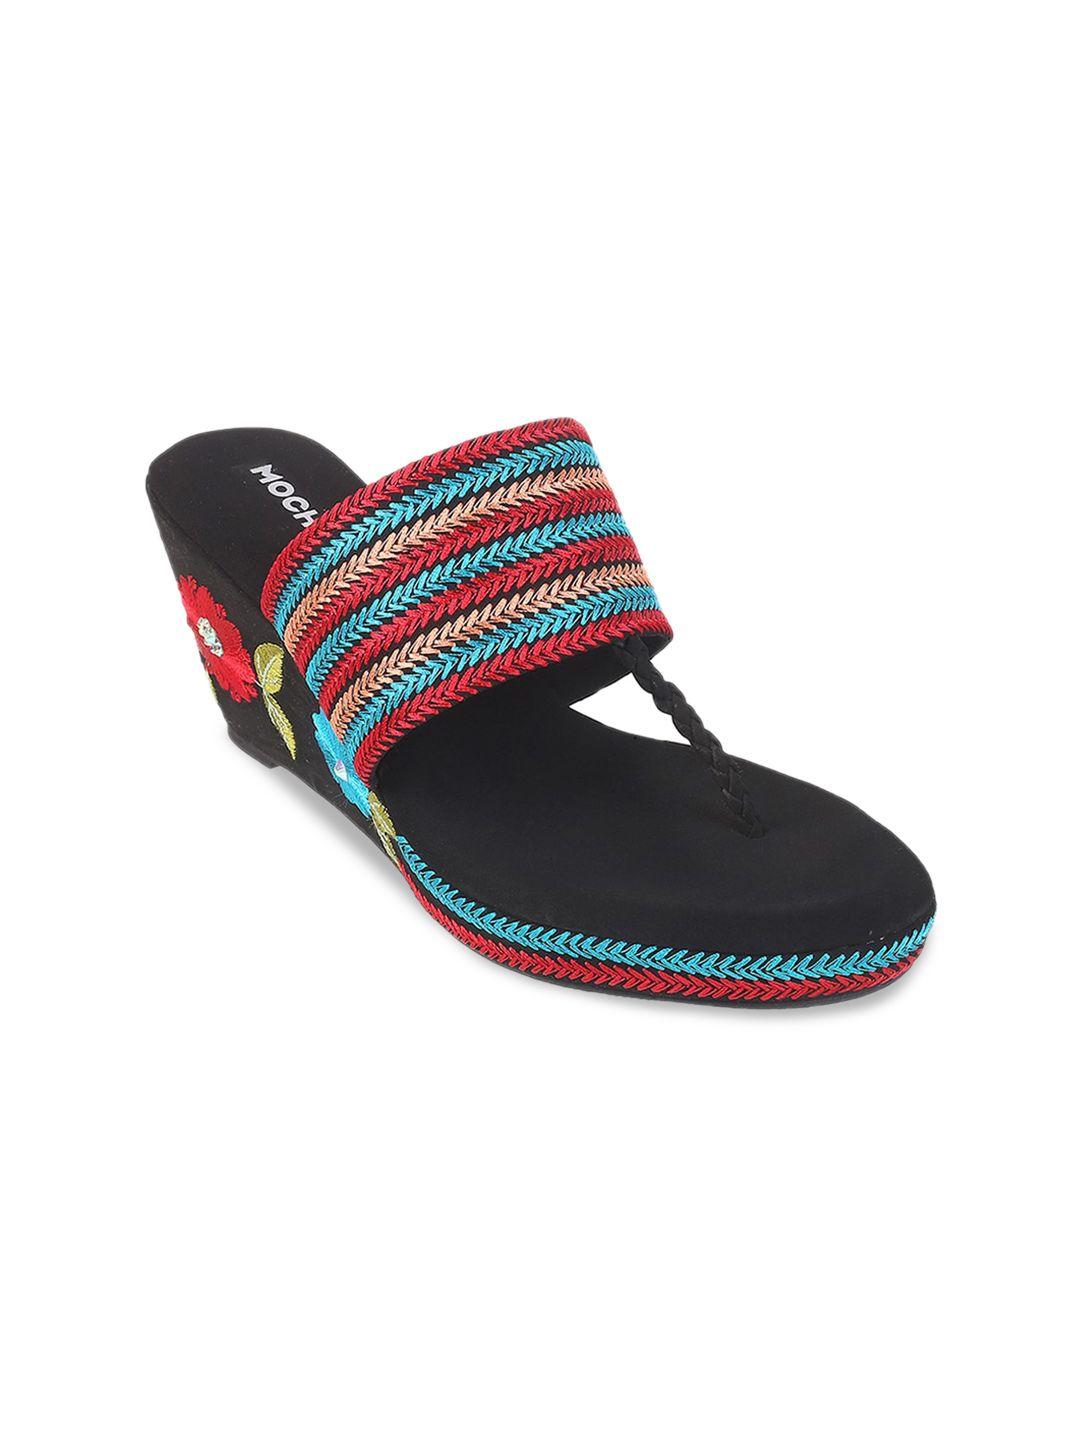 mochi ethnic embellished open toe wedges